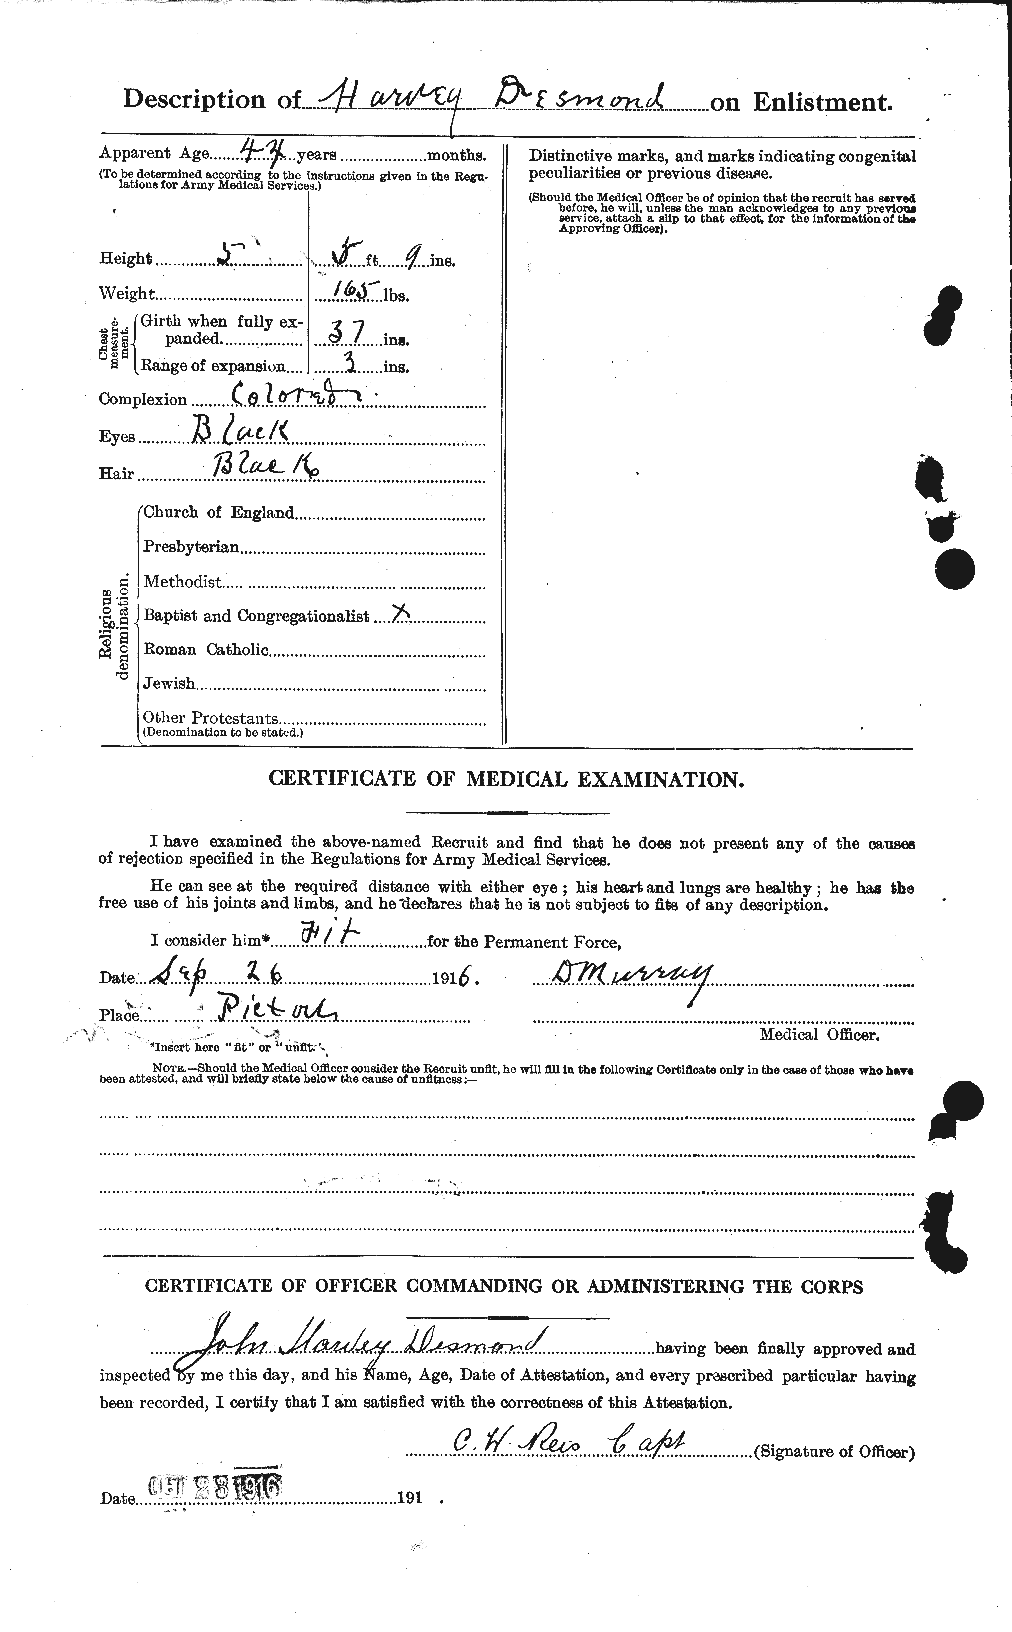 Dossiers du Personnel de la Première Guerre mondiale - CEC 291352b